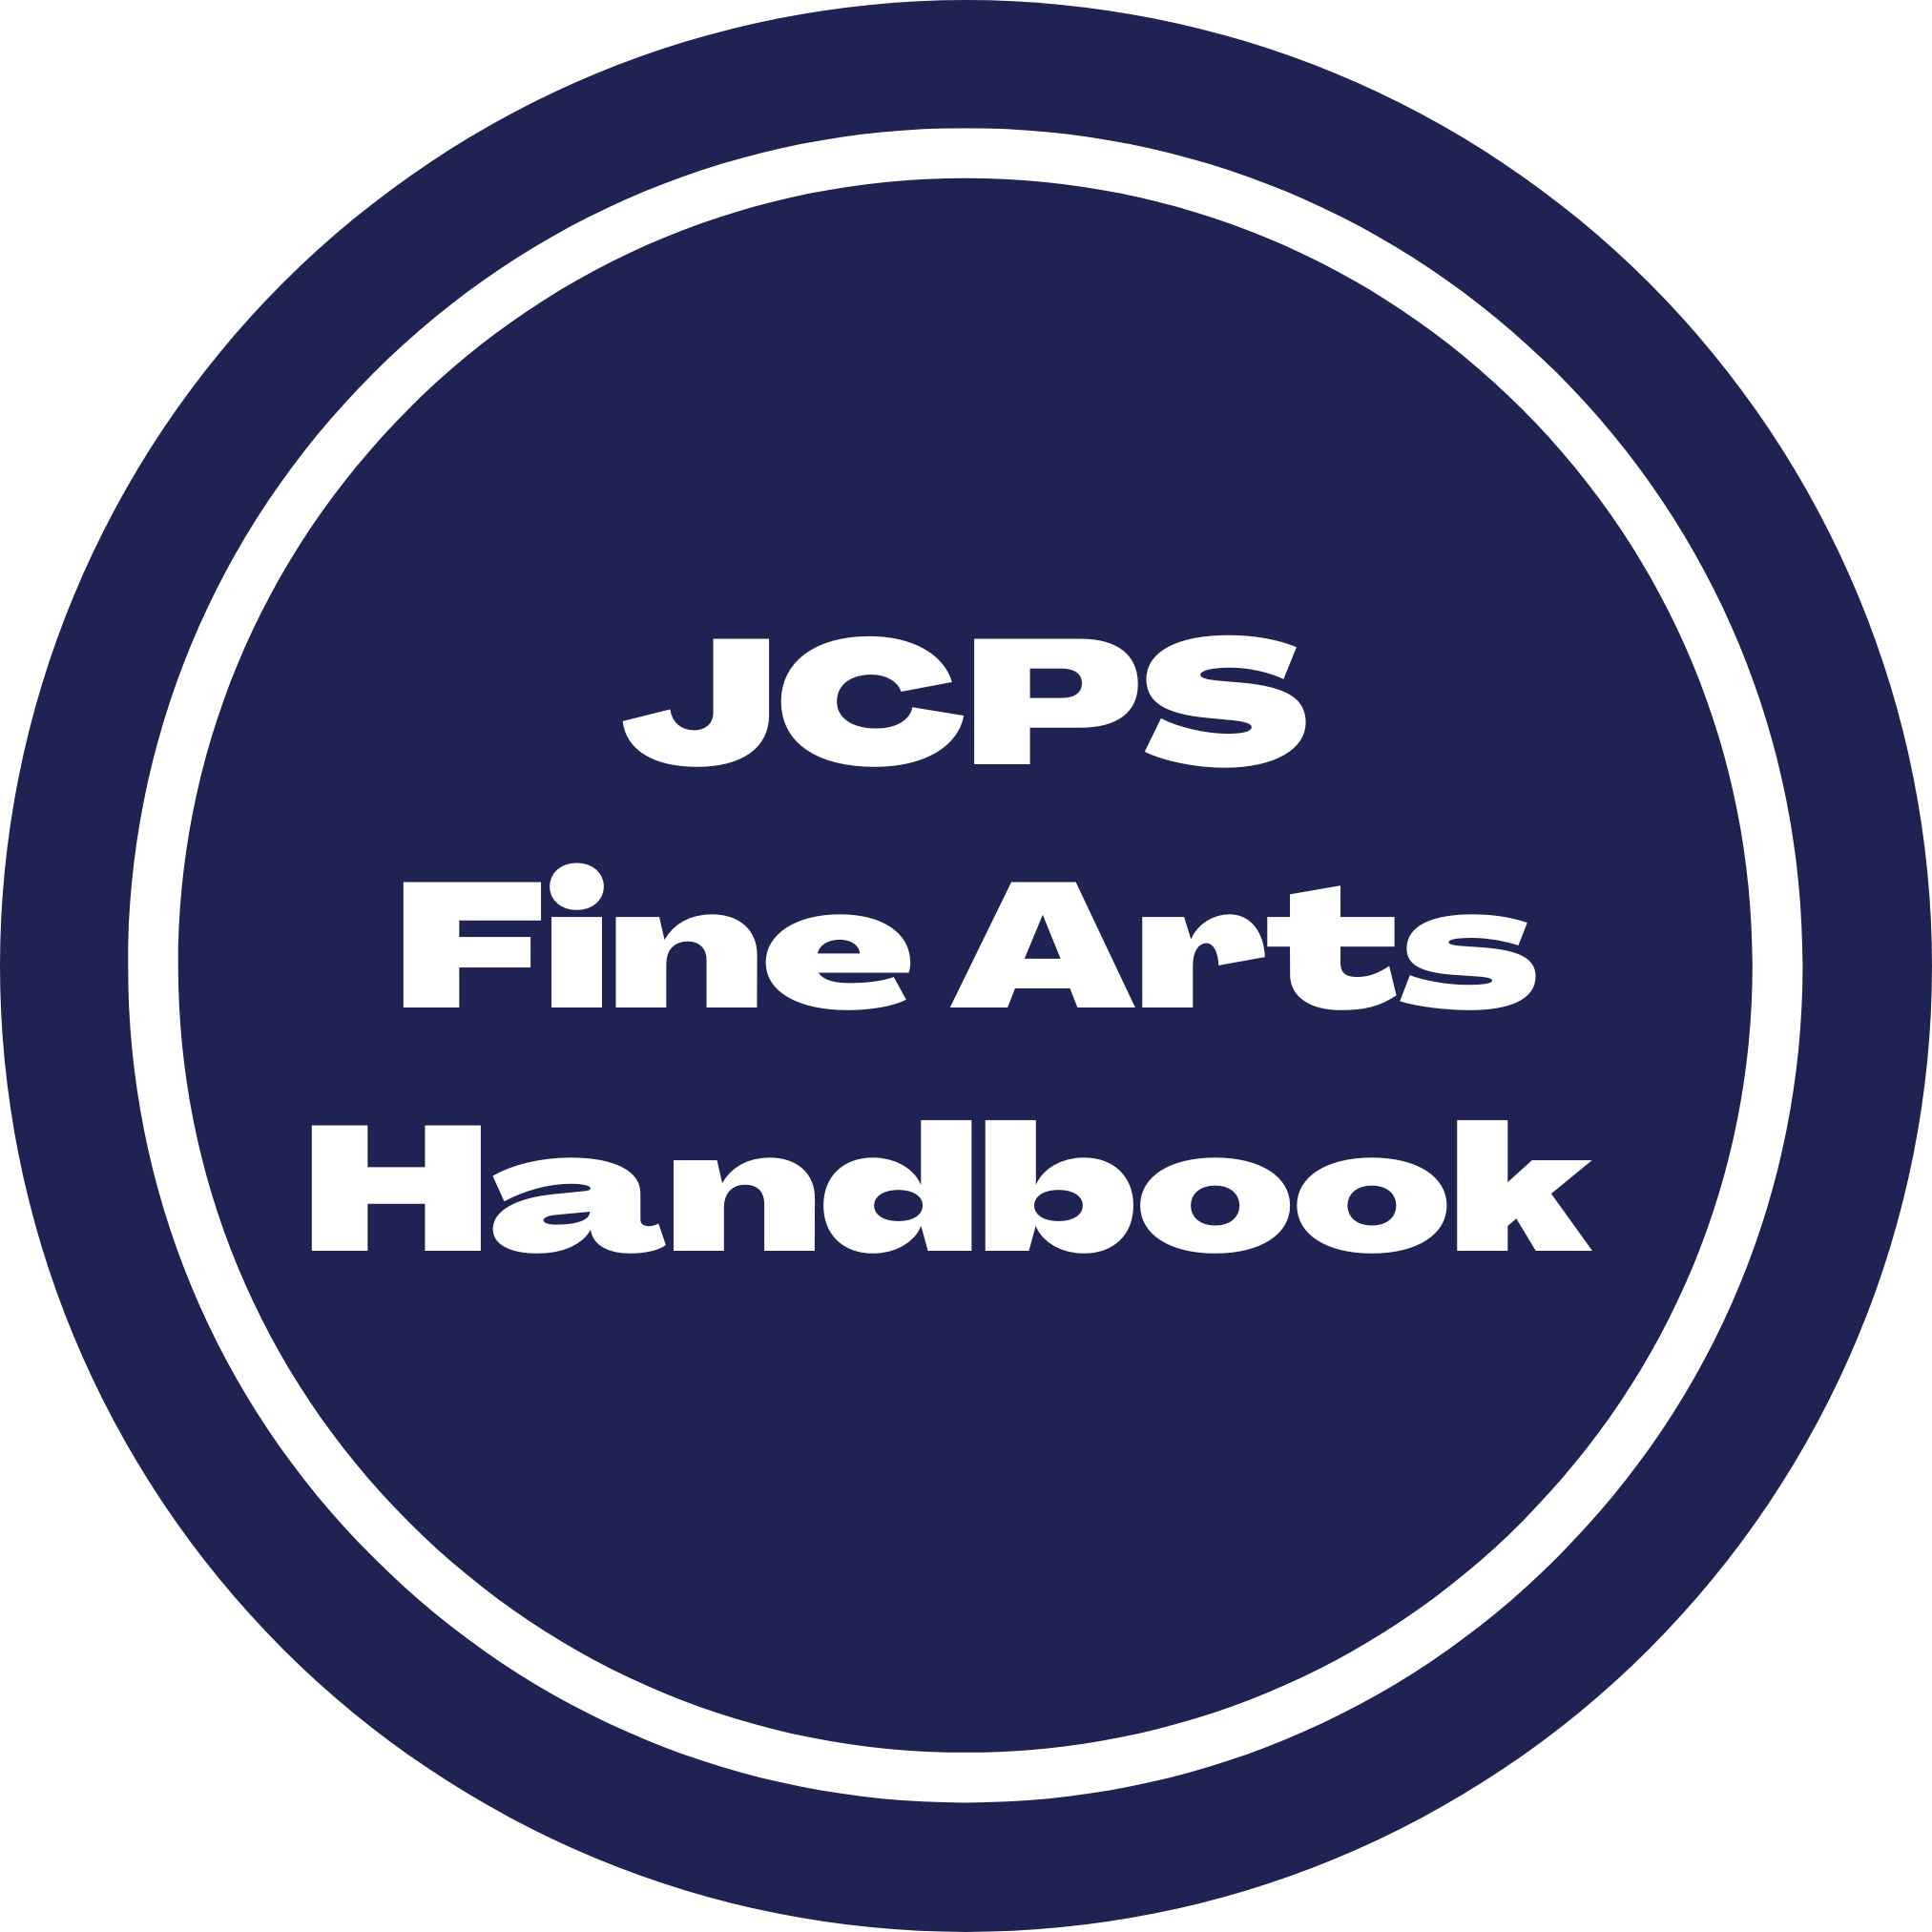 JCPS Fine Arts Handbook